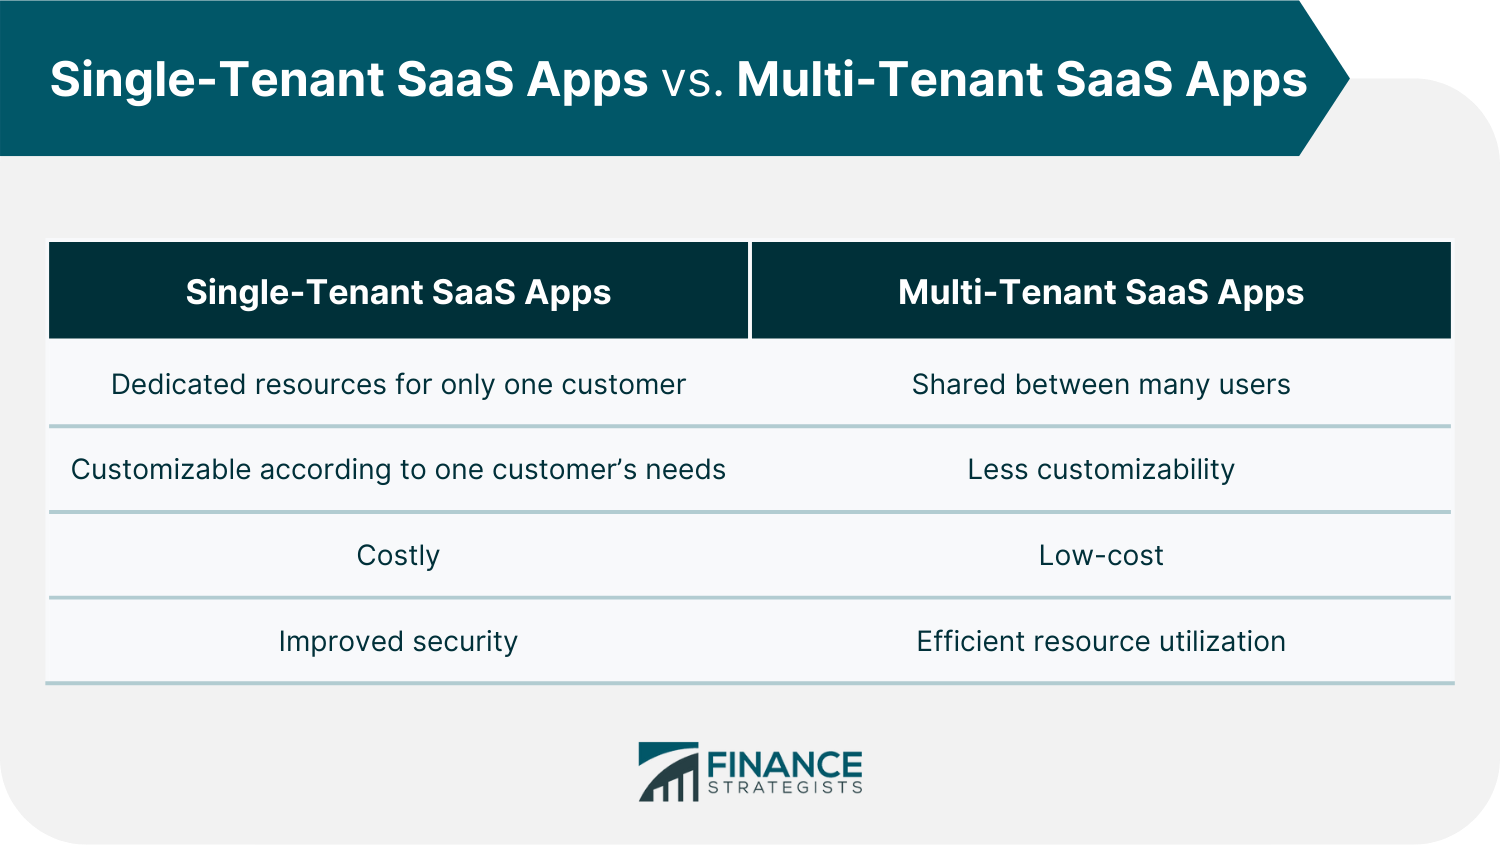 Single-Tenant SaaS Apps vs. Multi-Tenant SaaS Apps